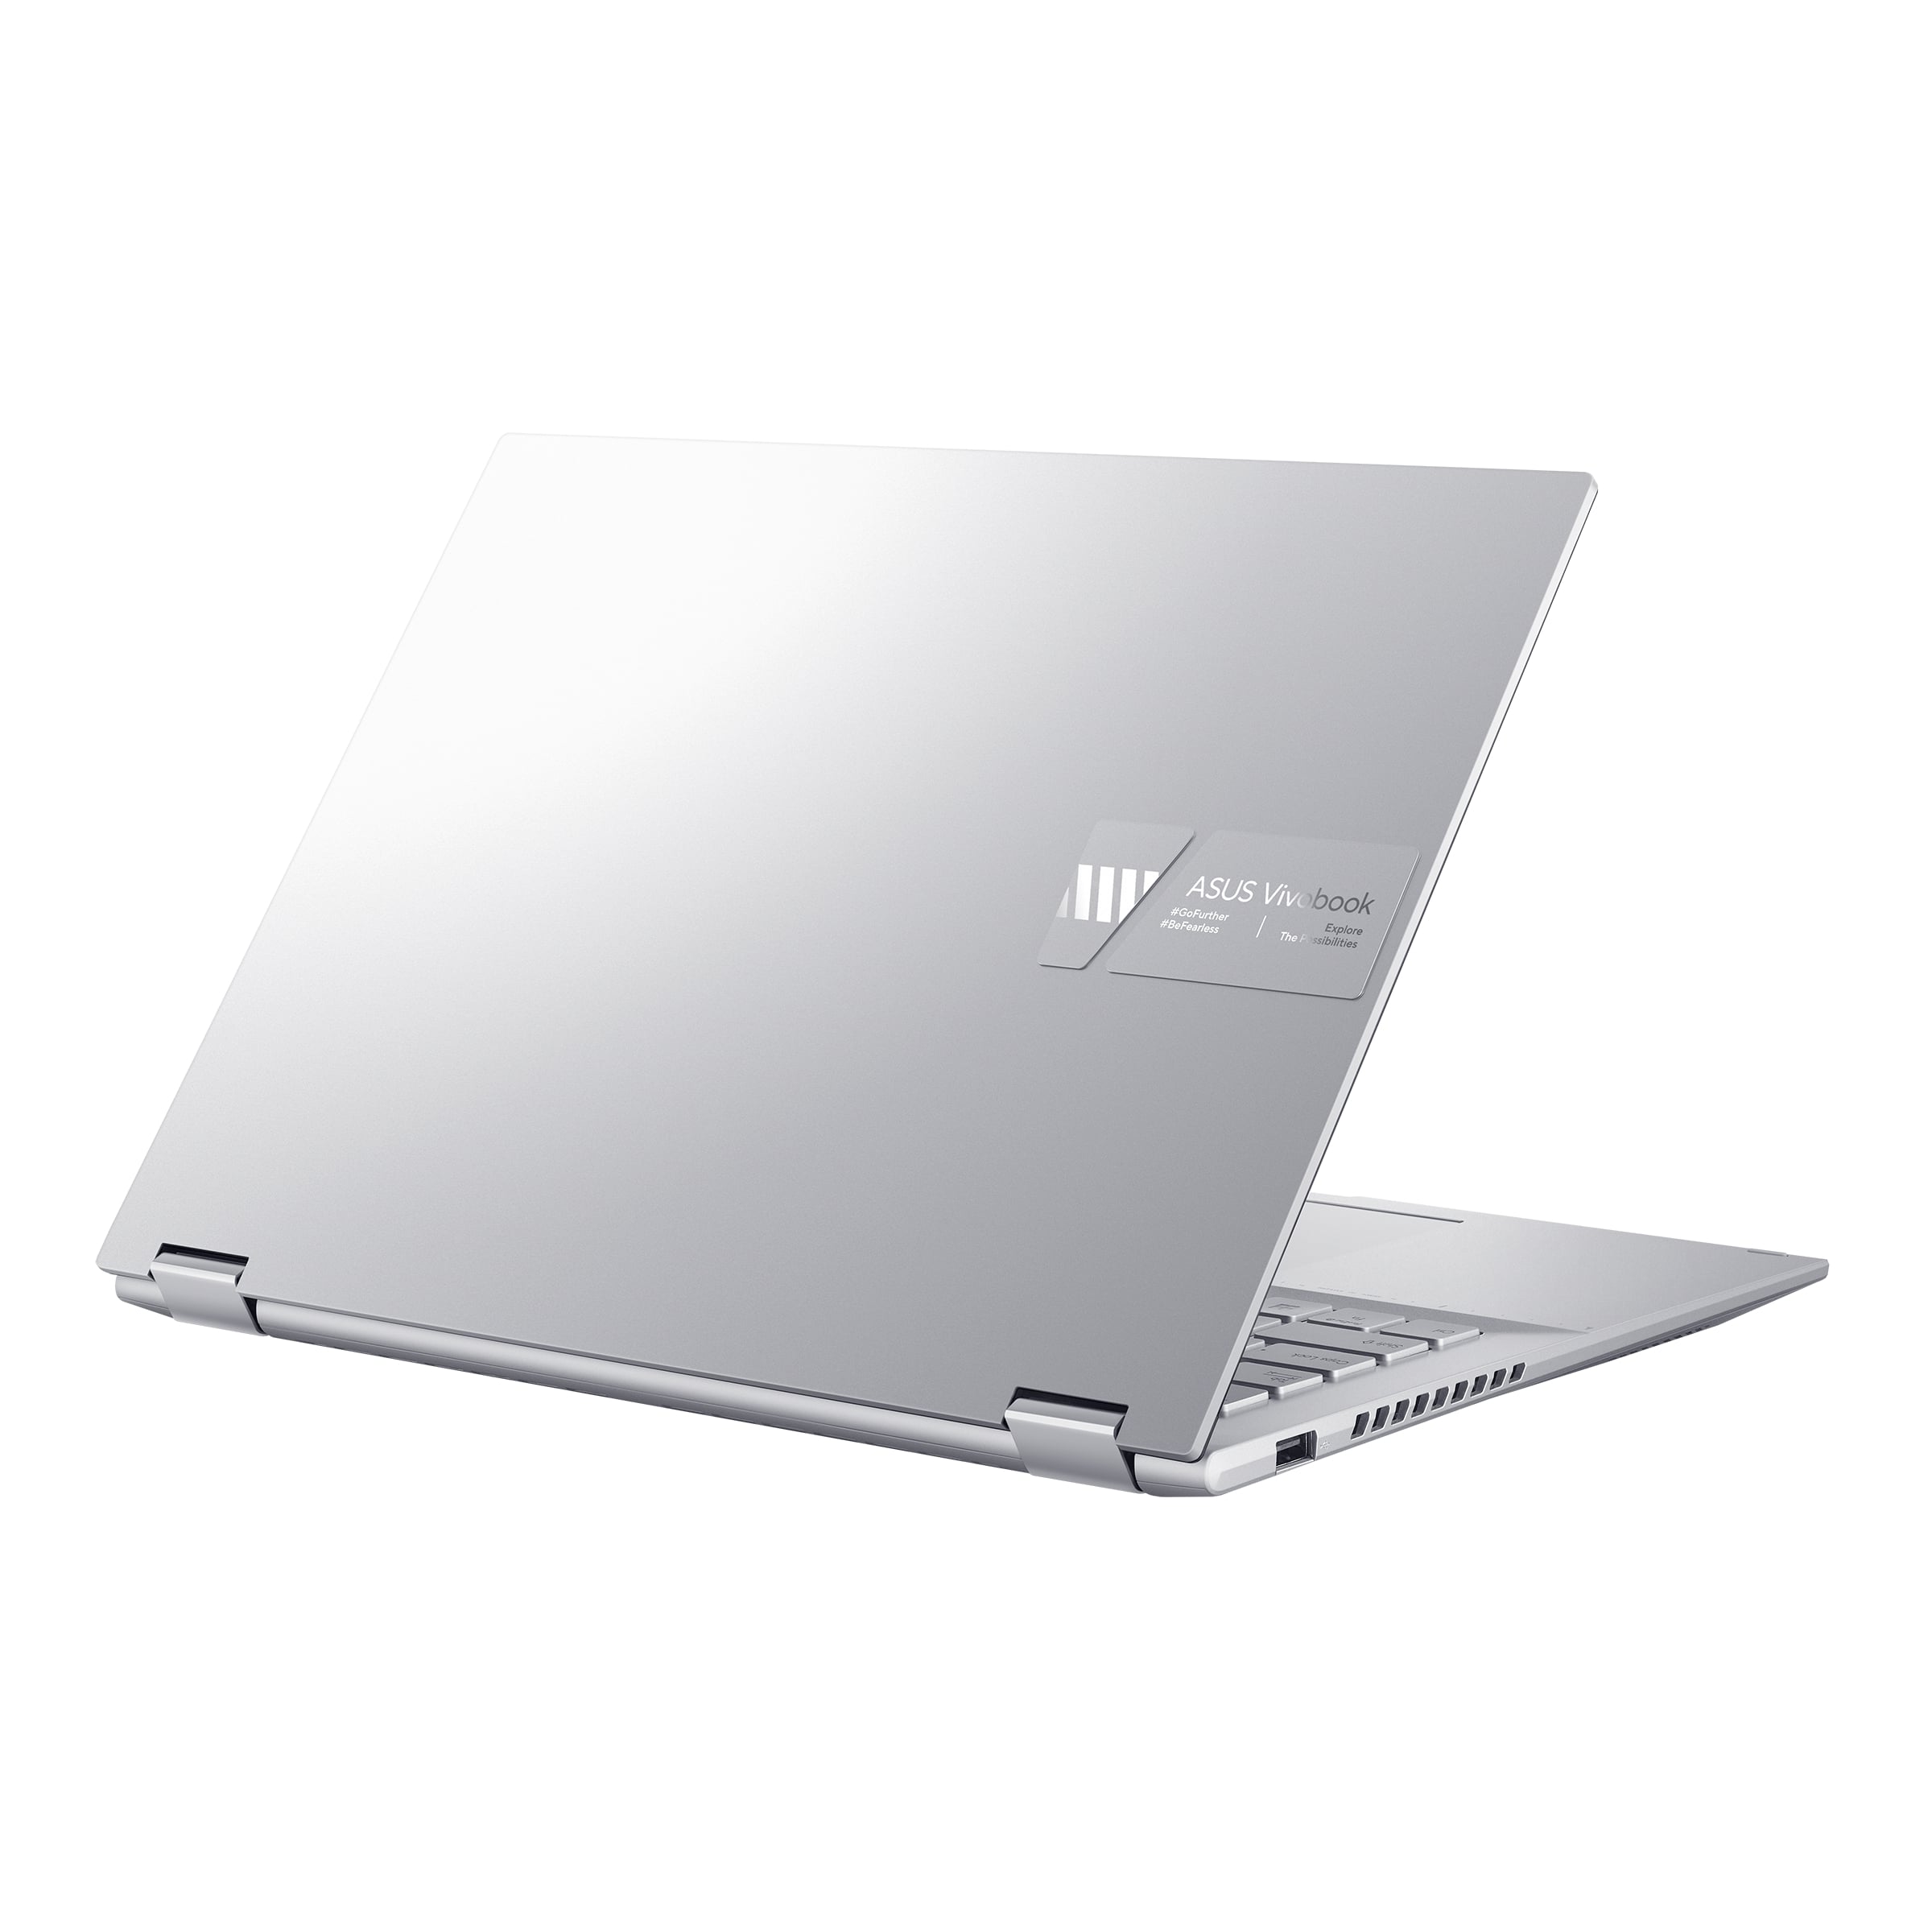 Vivobook 15 OLED (X1505)｜Laptops For Home｜ASUS Global